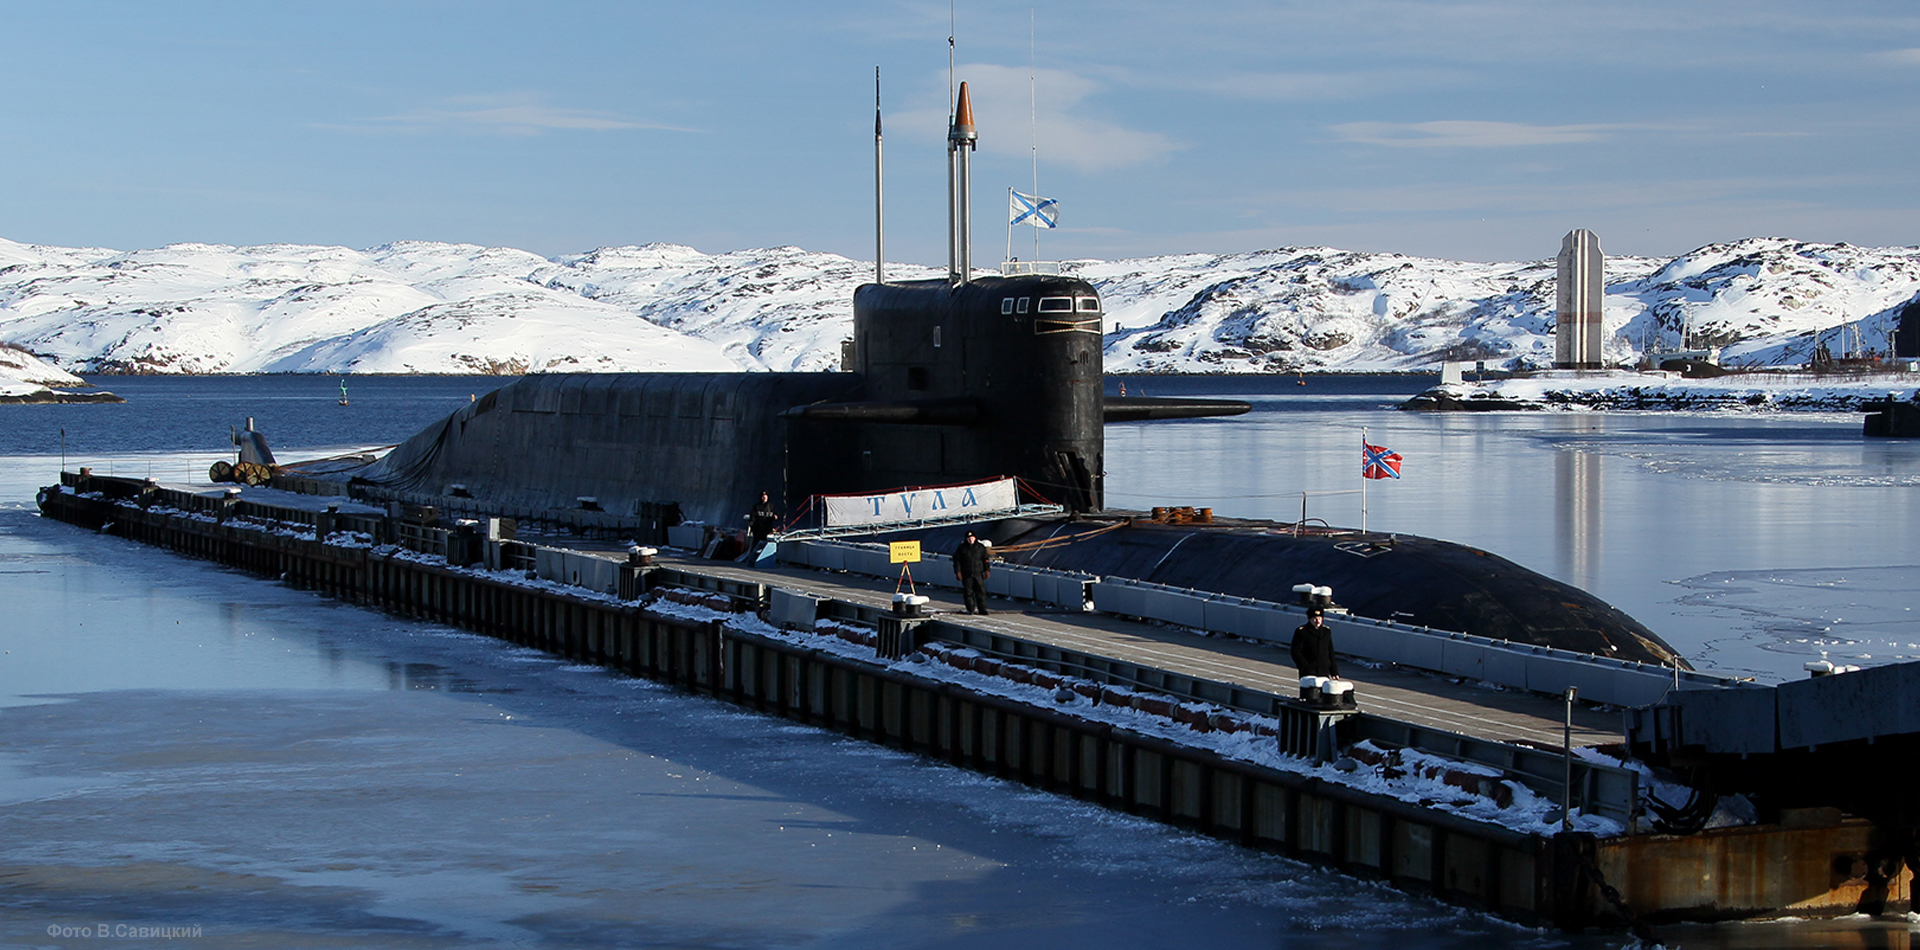 再见,排水量4万8千吨的俄巨型核潜艇退役,20枚核导弹无用武之地